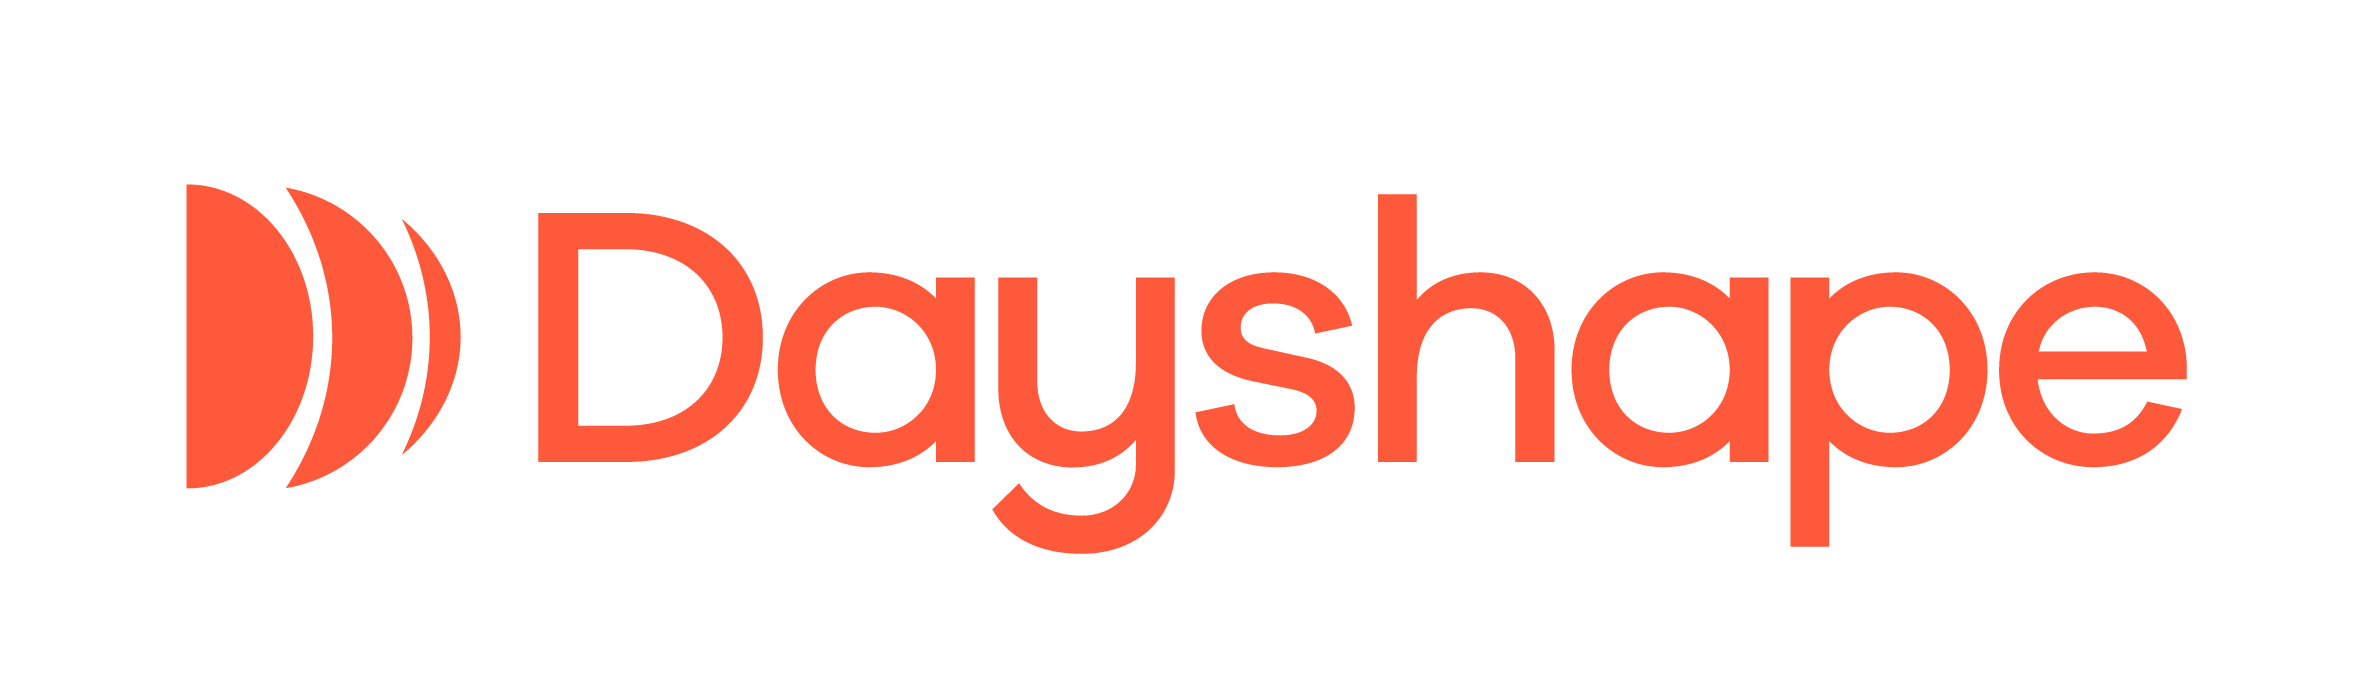 dayshape-logo-orange.png